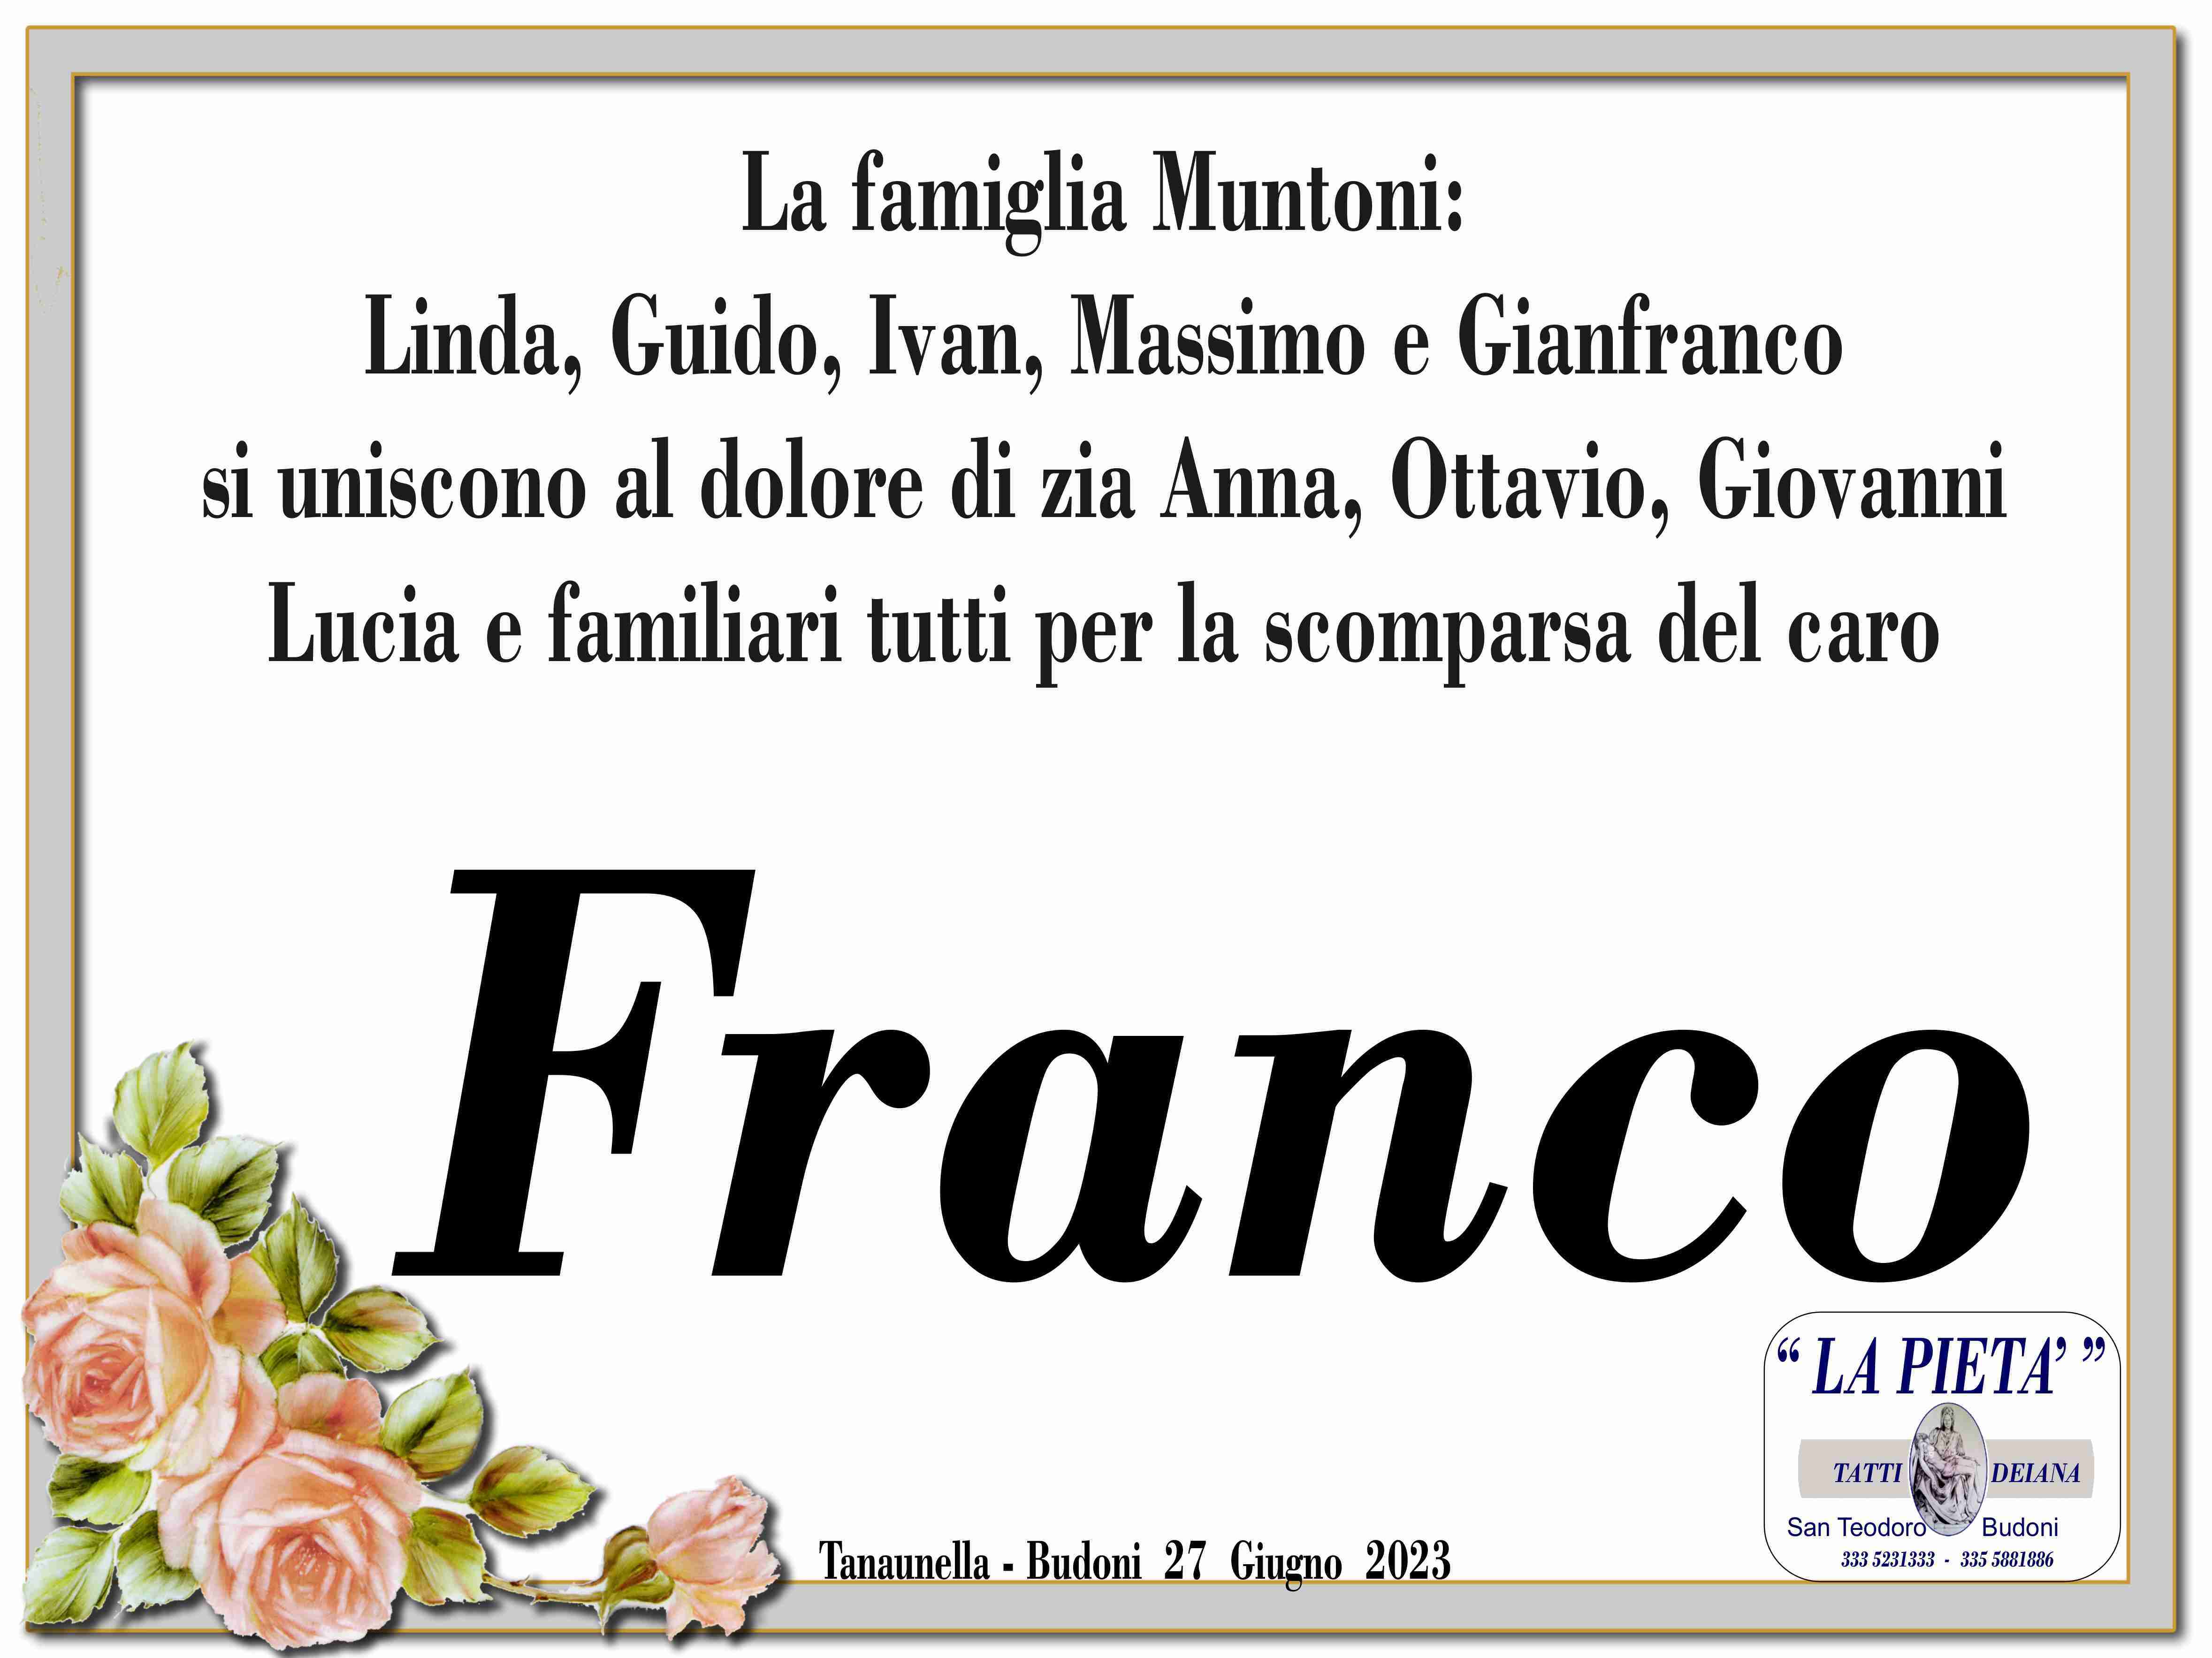 Franco Zucchitta